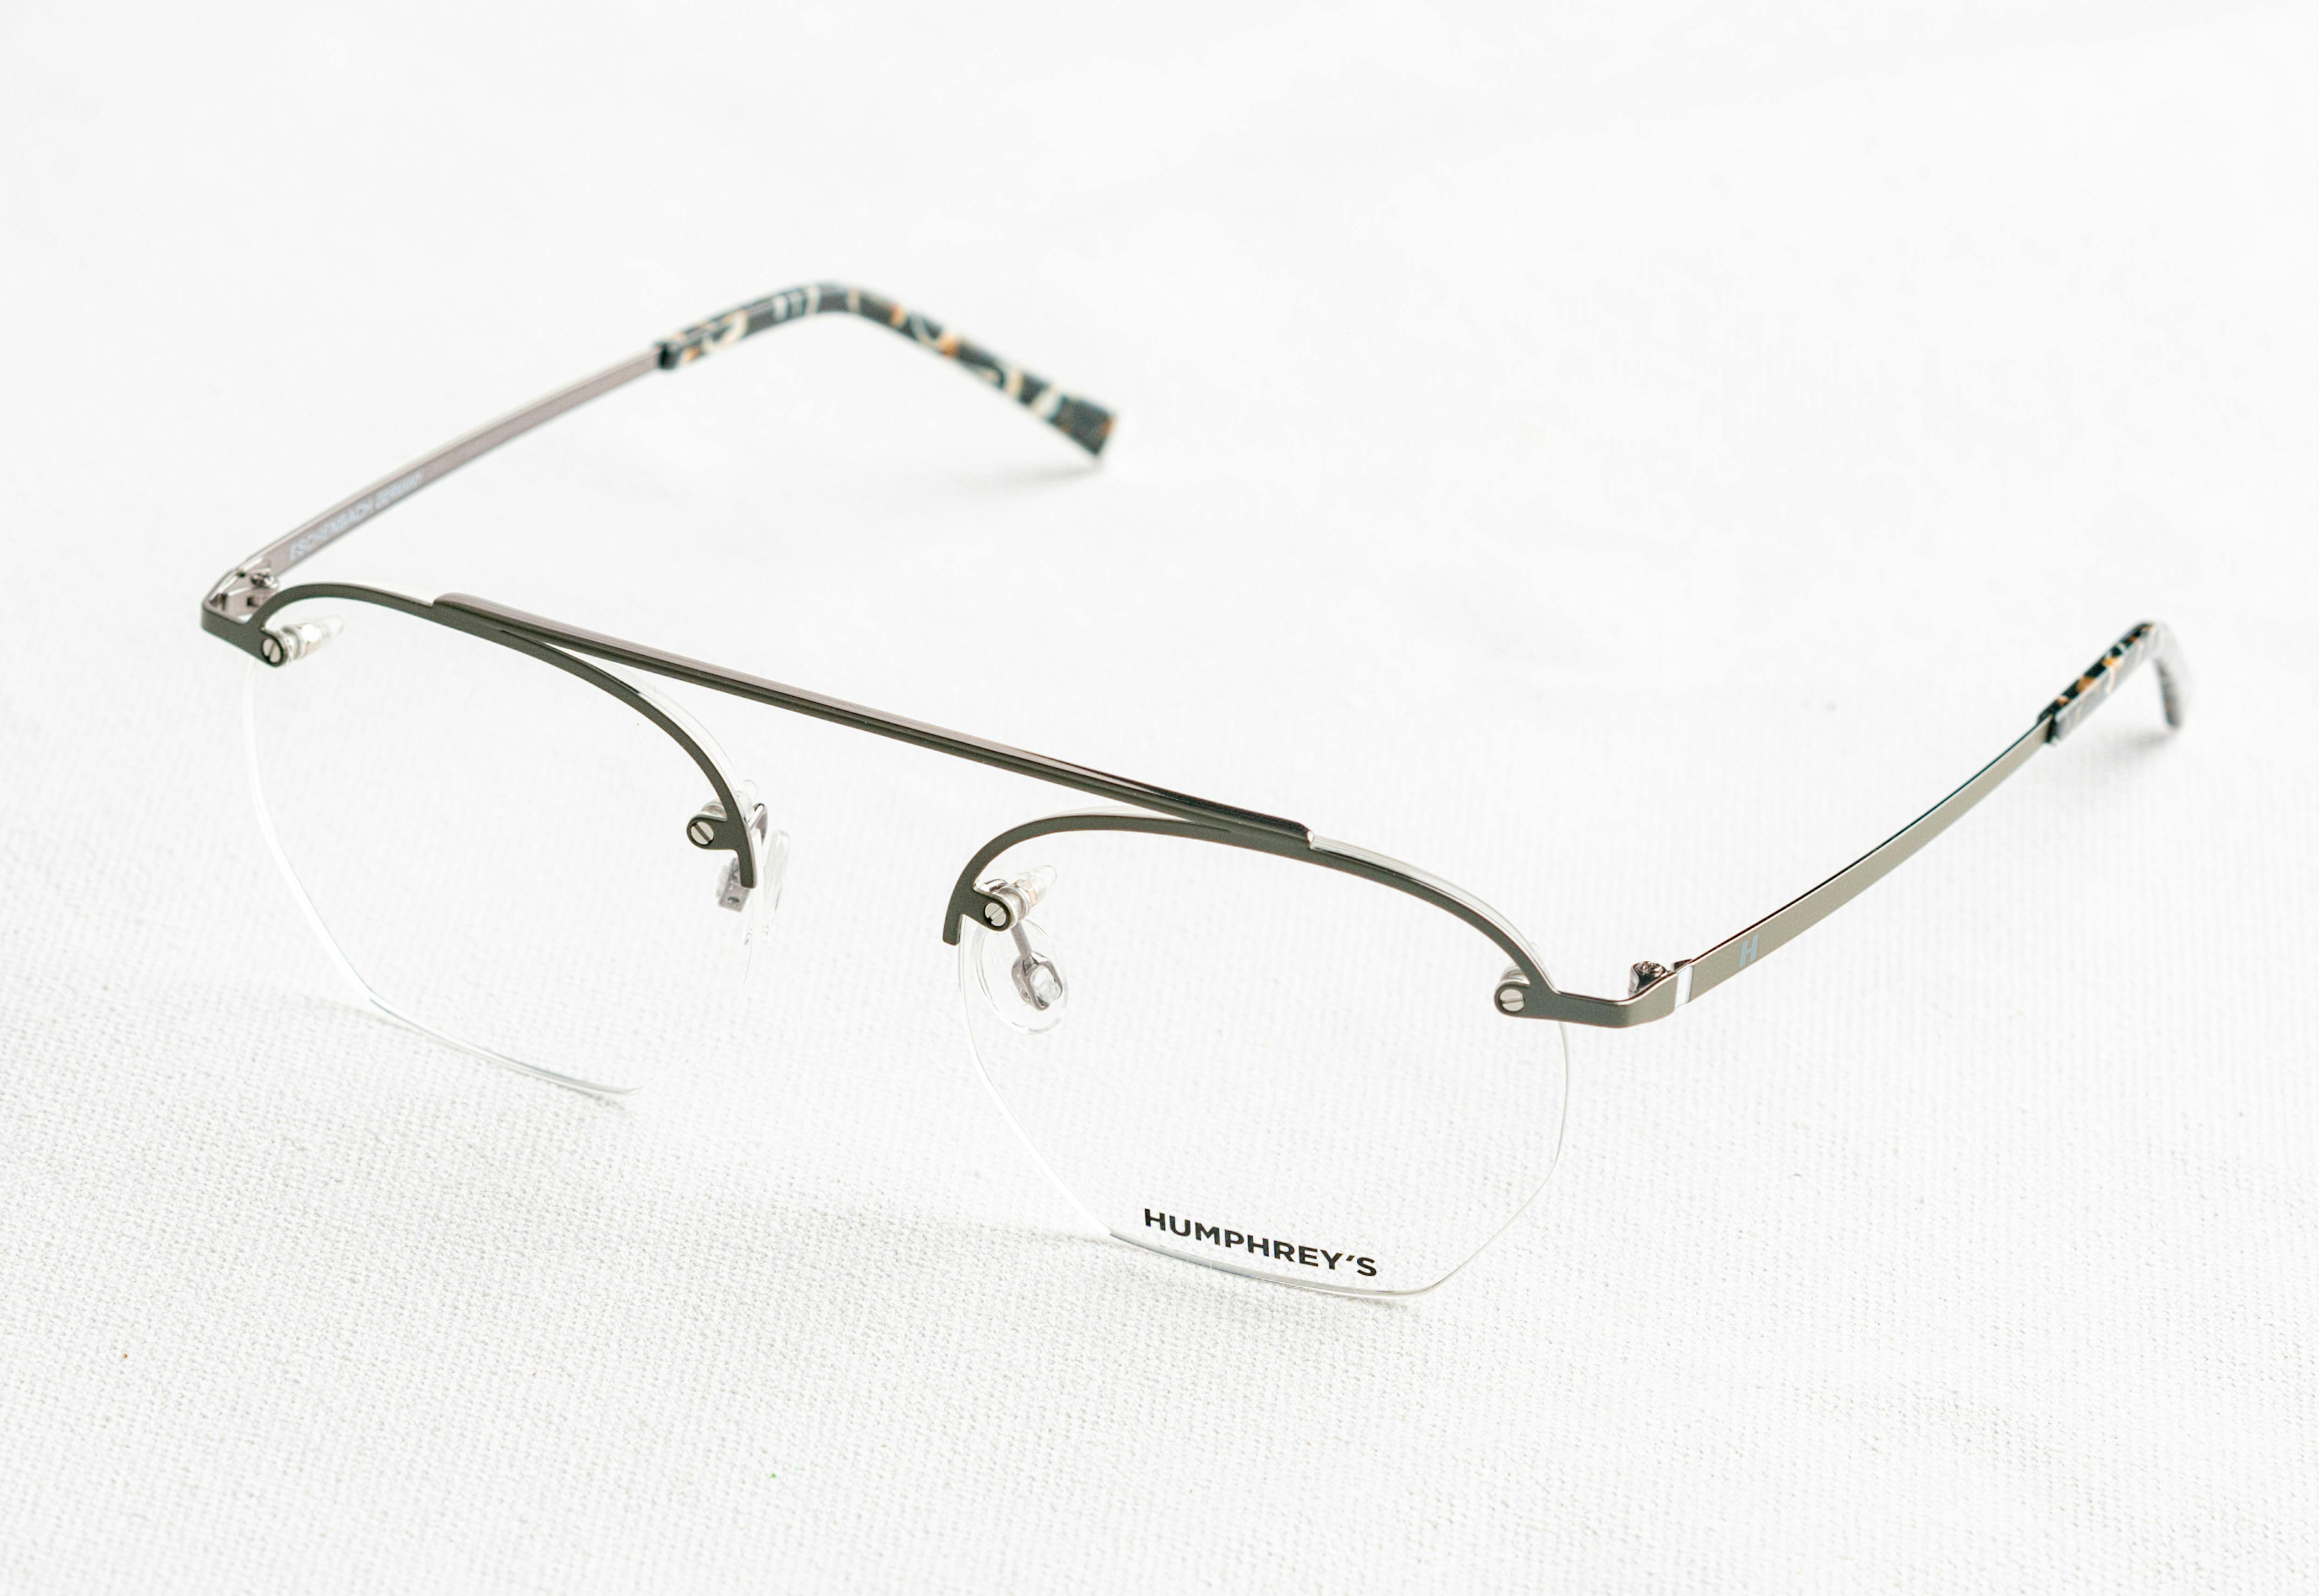 Gold Frame Black Lens Eyeglasses · Free Stock Photo